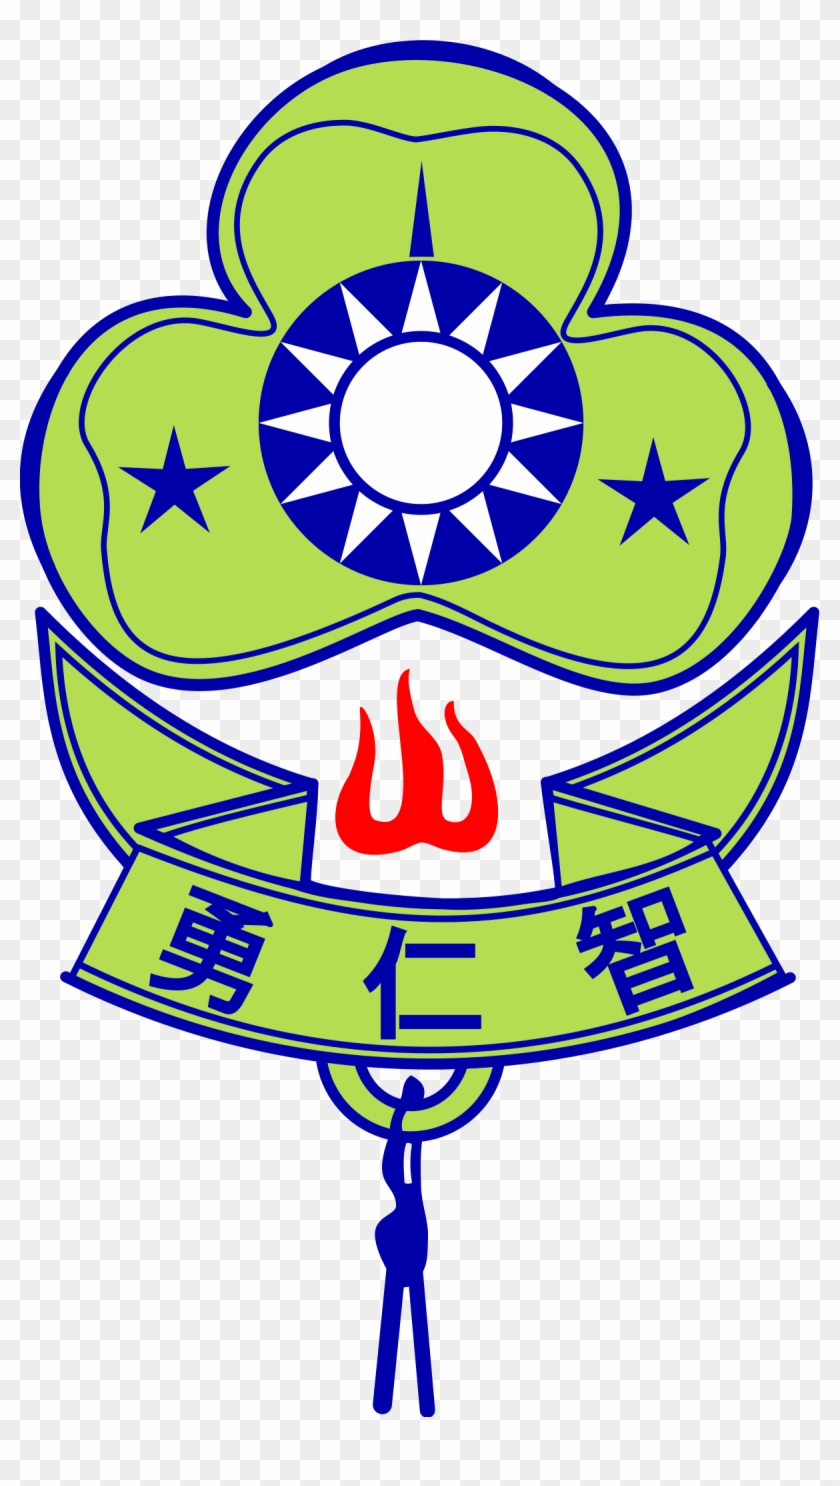 Girl Scouts Of Taiwan - Sun Yat-sen Mausoleum Clipart #2009543